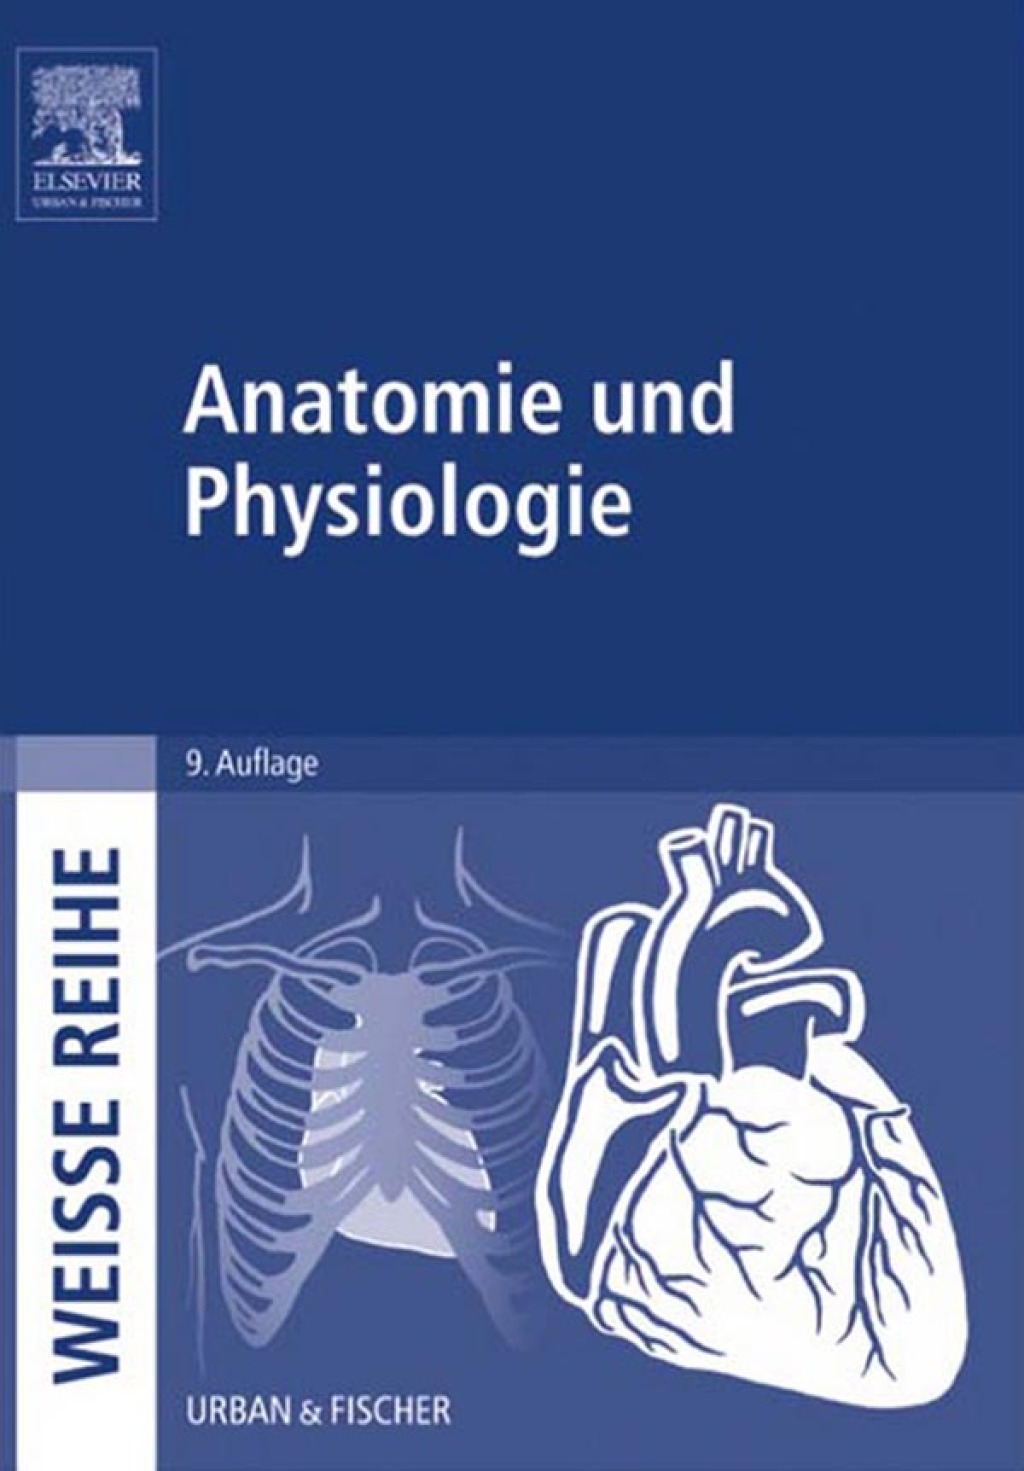 Anatomie und Physiologie (eBook)